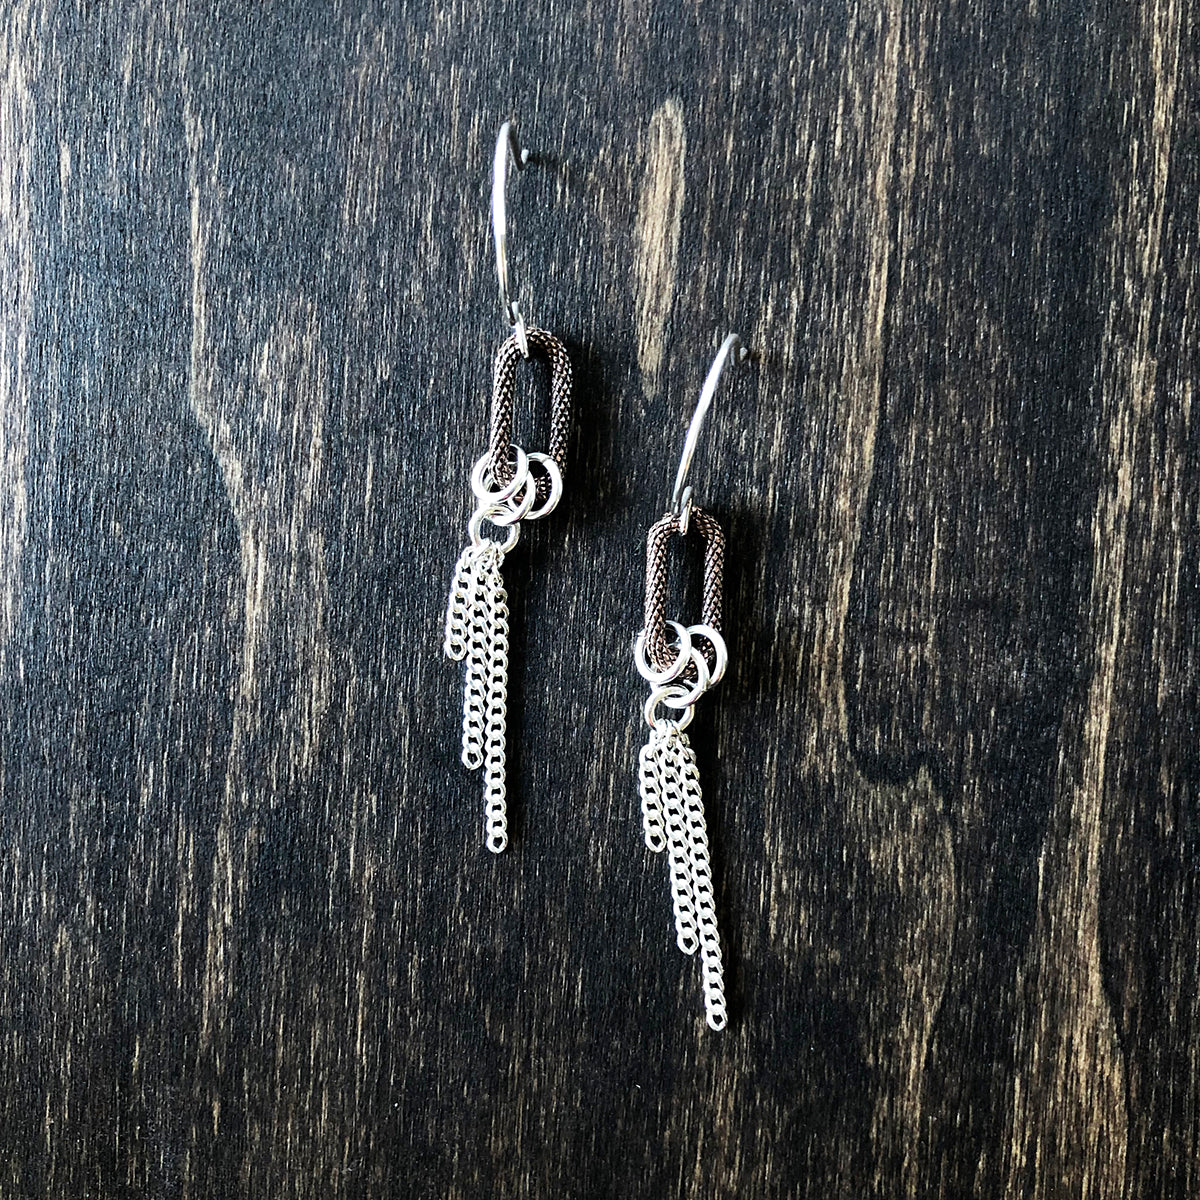 Copper and Silver Earrings - Jester Swink